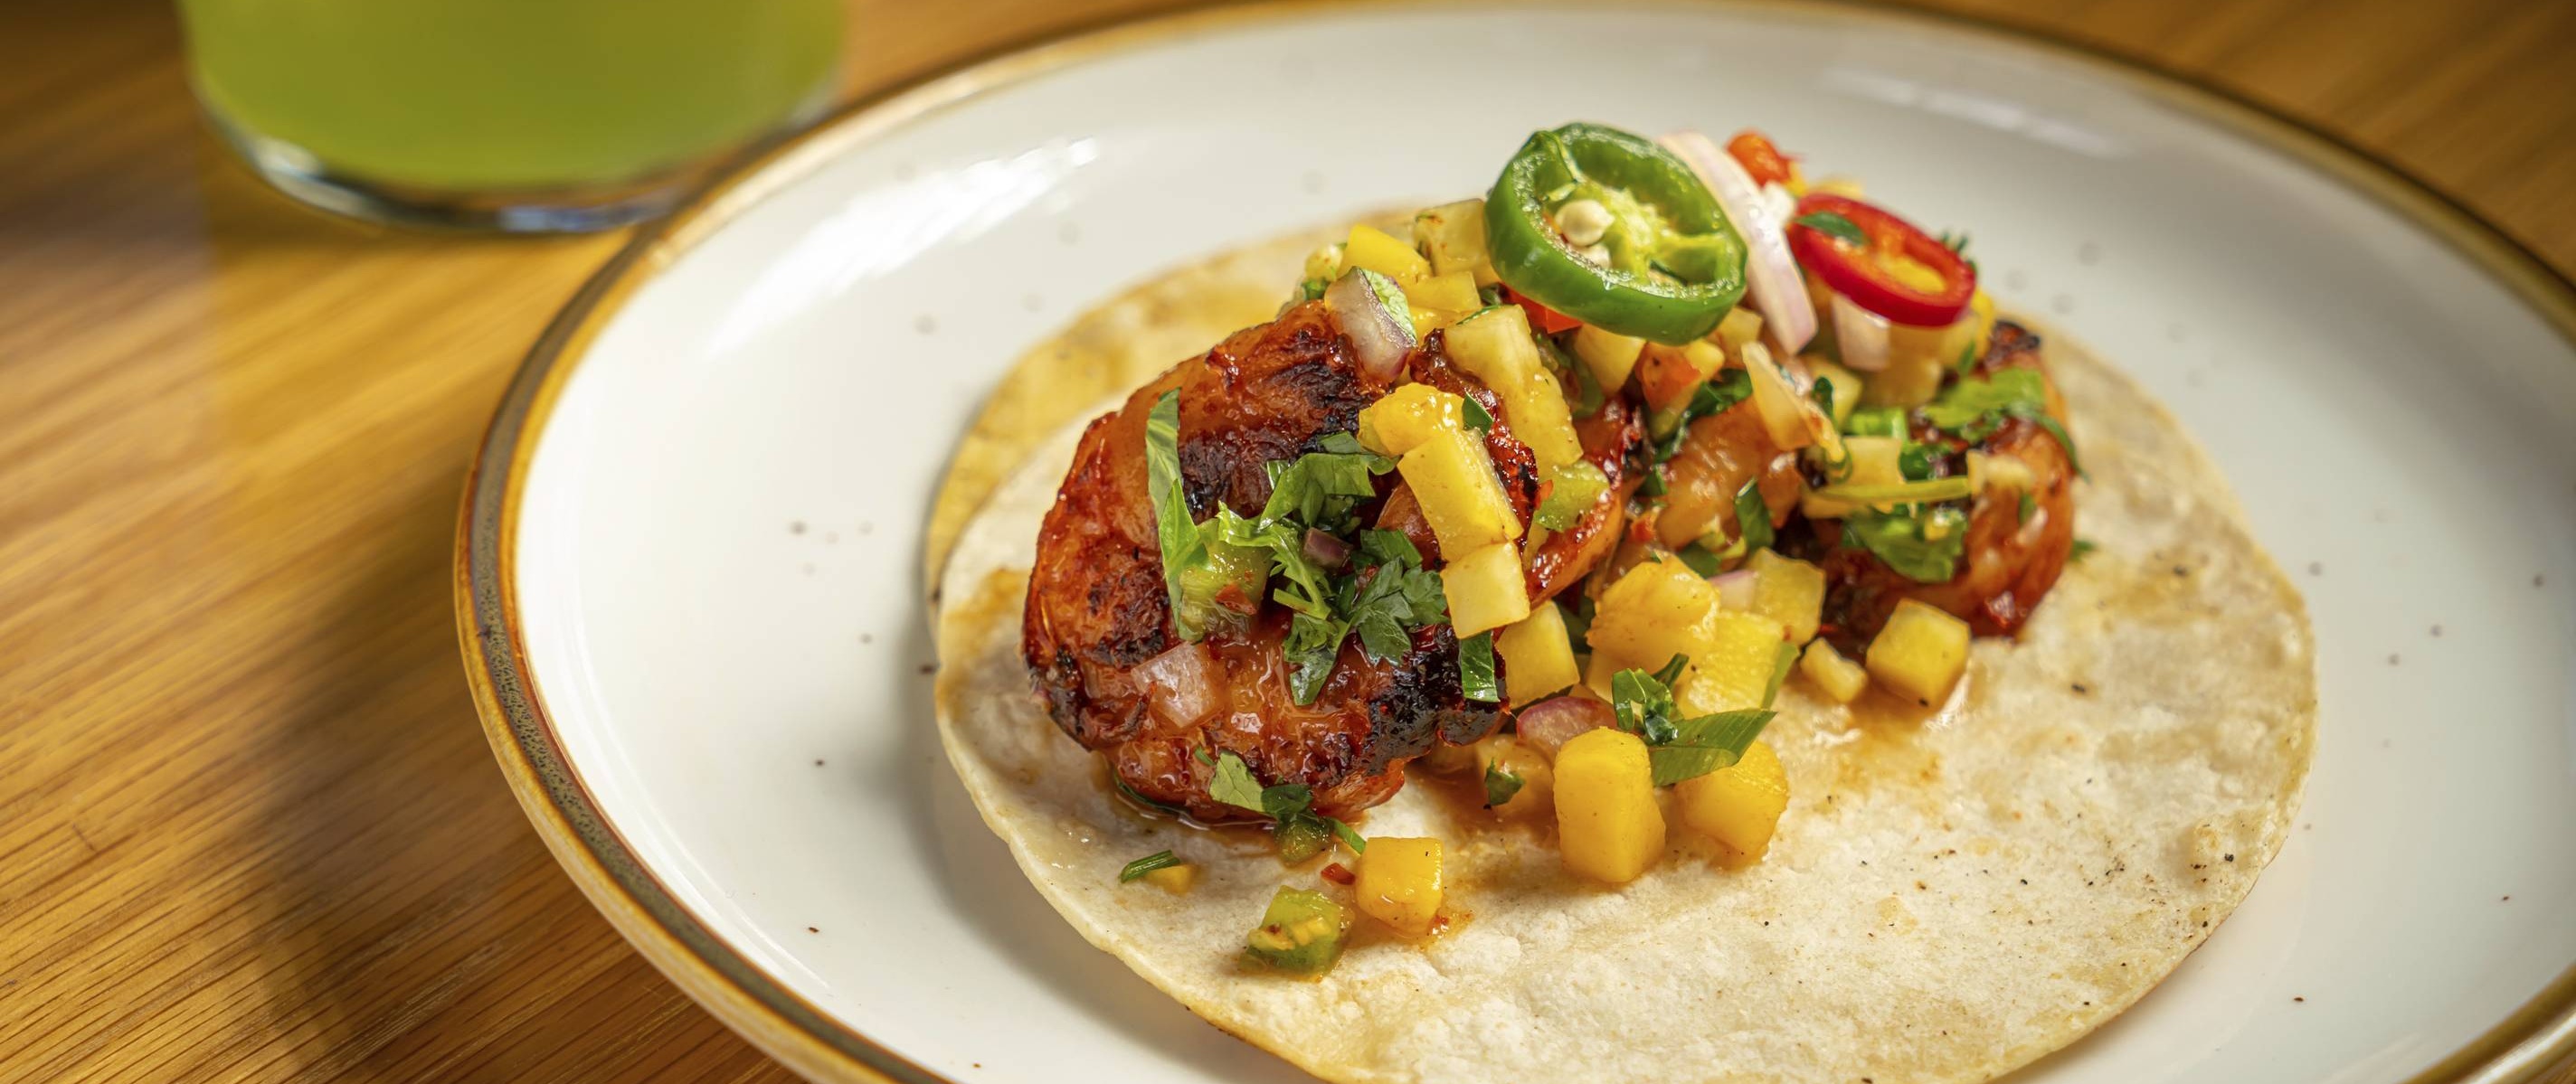 Shrimp Al Pastor Tacos Recipe: How To Make